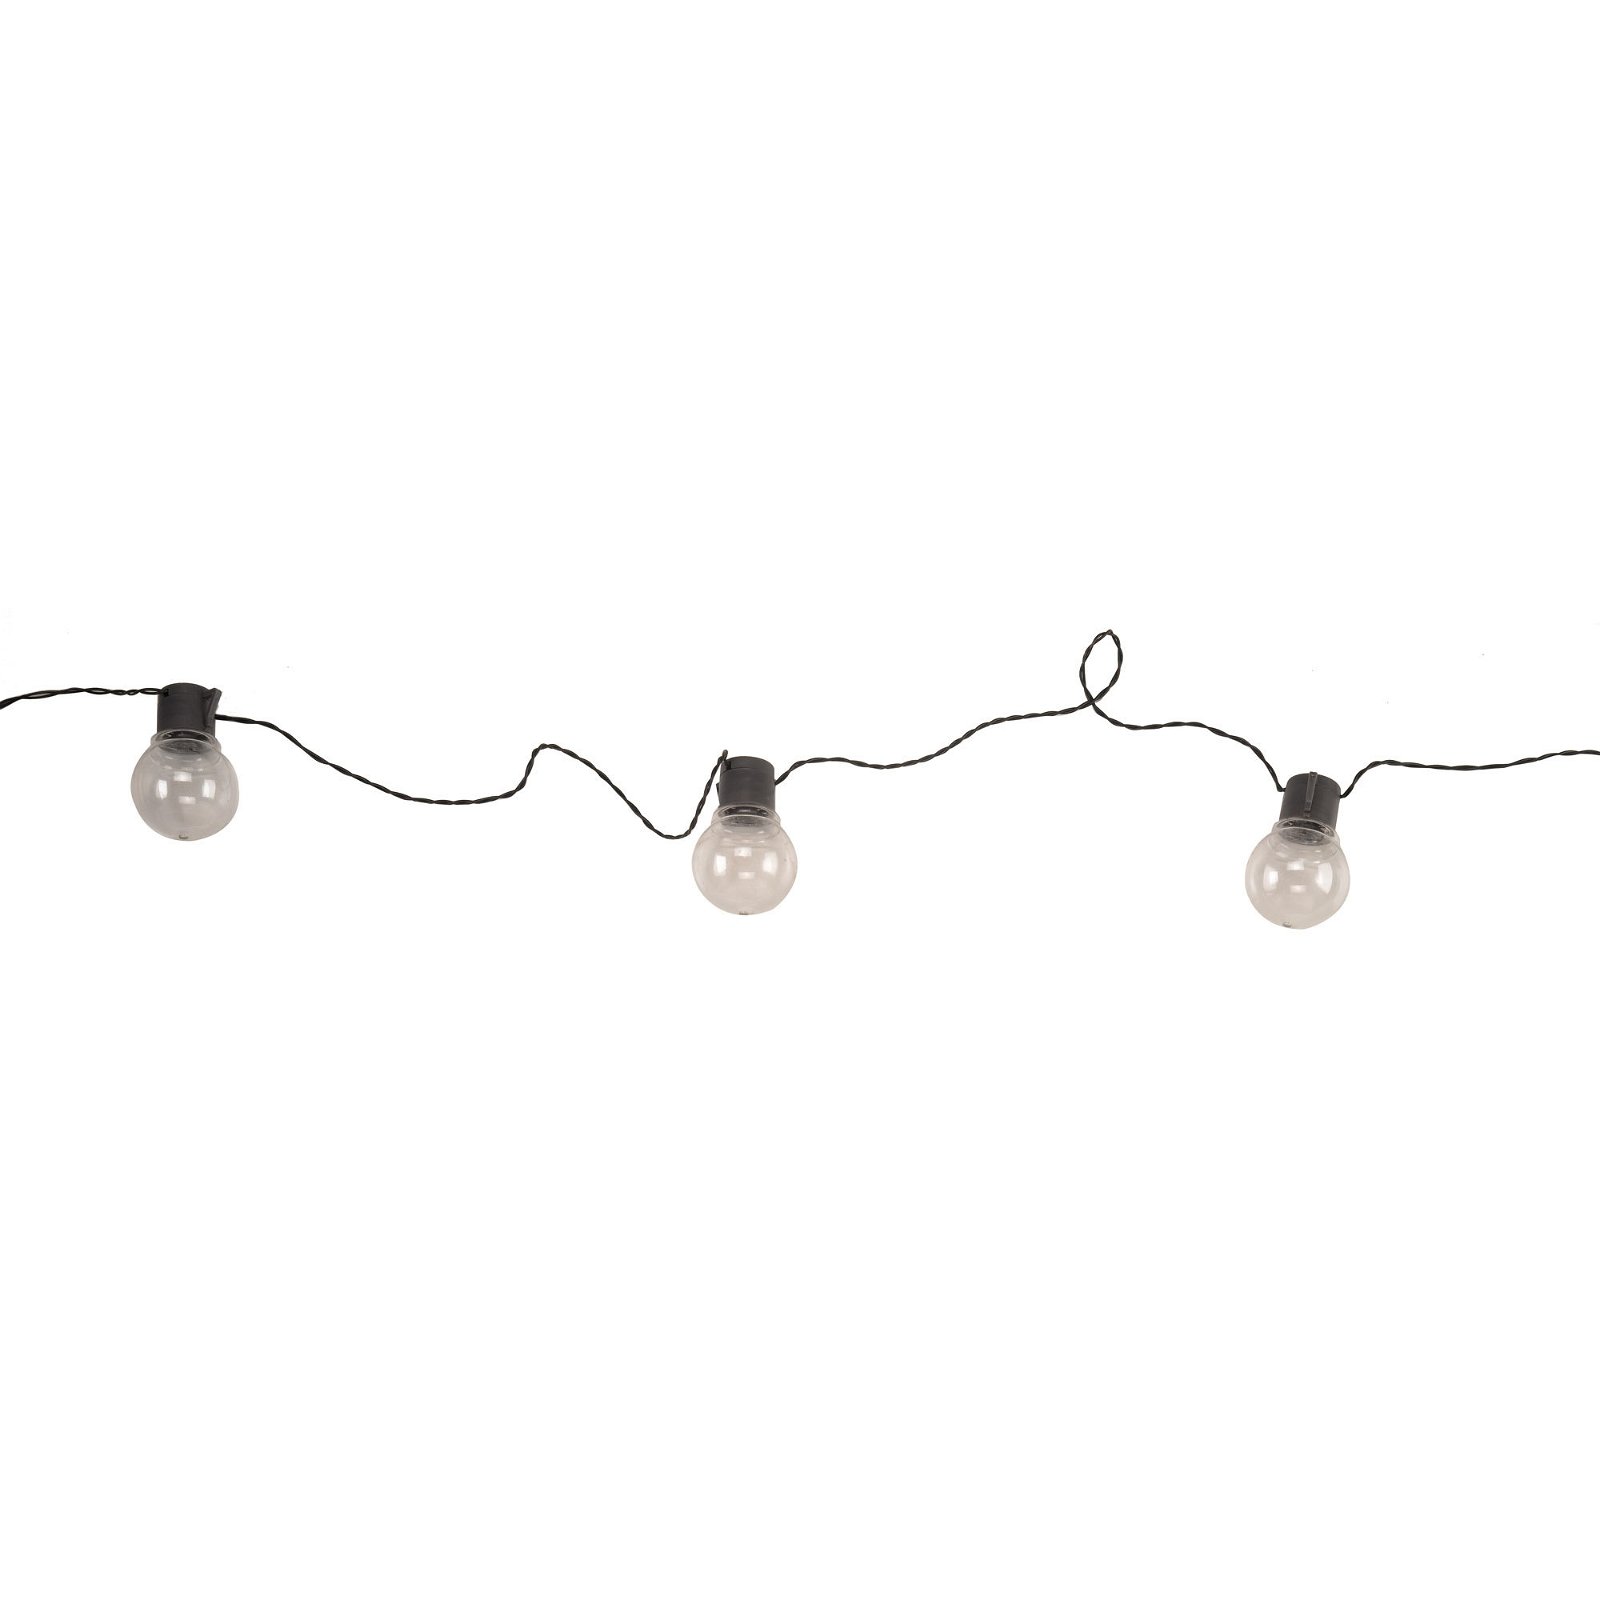 Traditionelle Lichterkette 'Festoon String Light', warmweiß, Länge 10 m